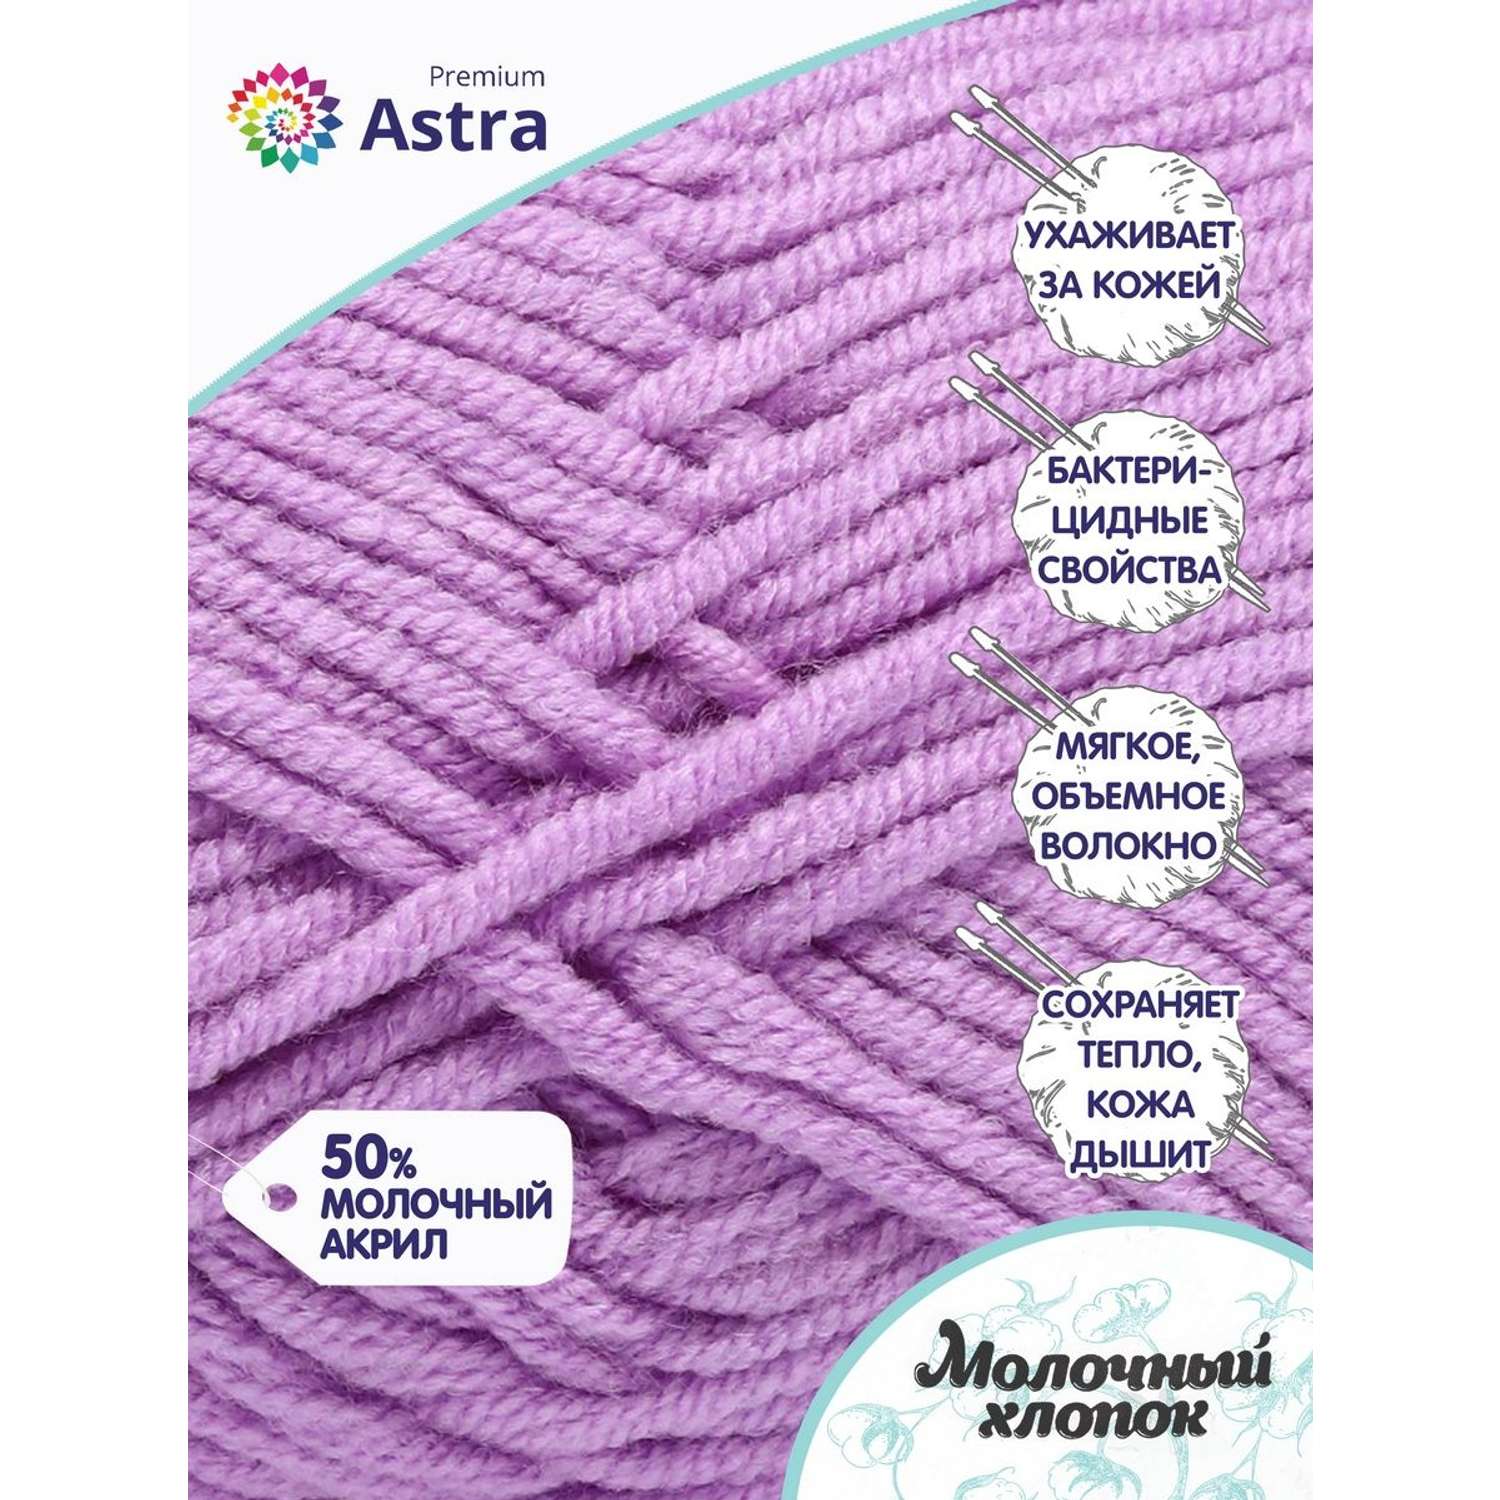 Пряжа для вязания Astra Premium milk cotton хлопок акрил 50 гр 100 м 65 сиреневый 3 мотка - фото 2